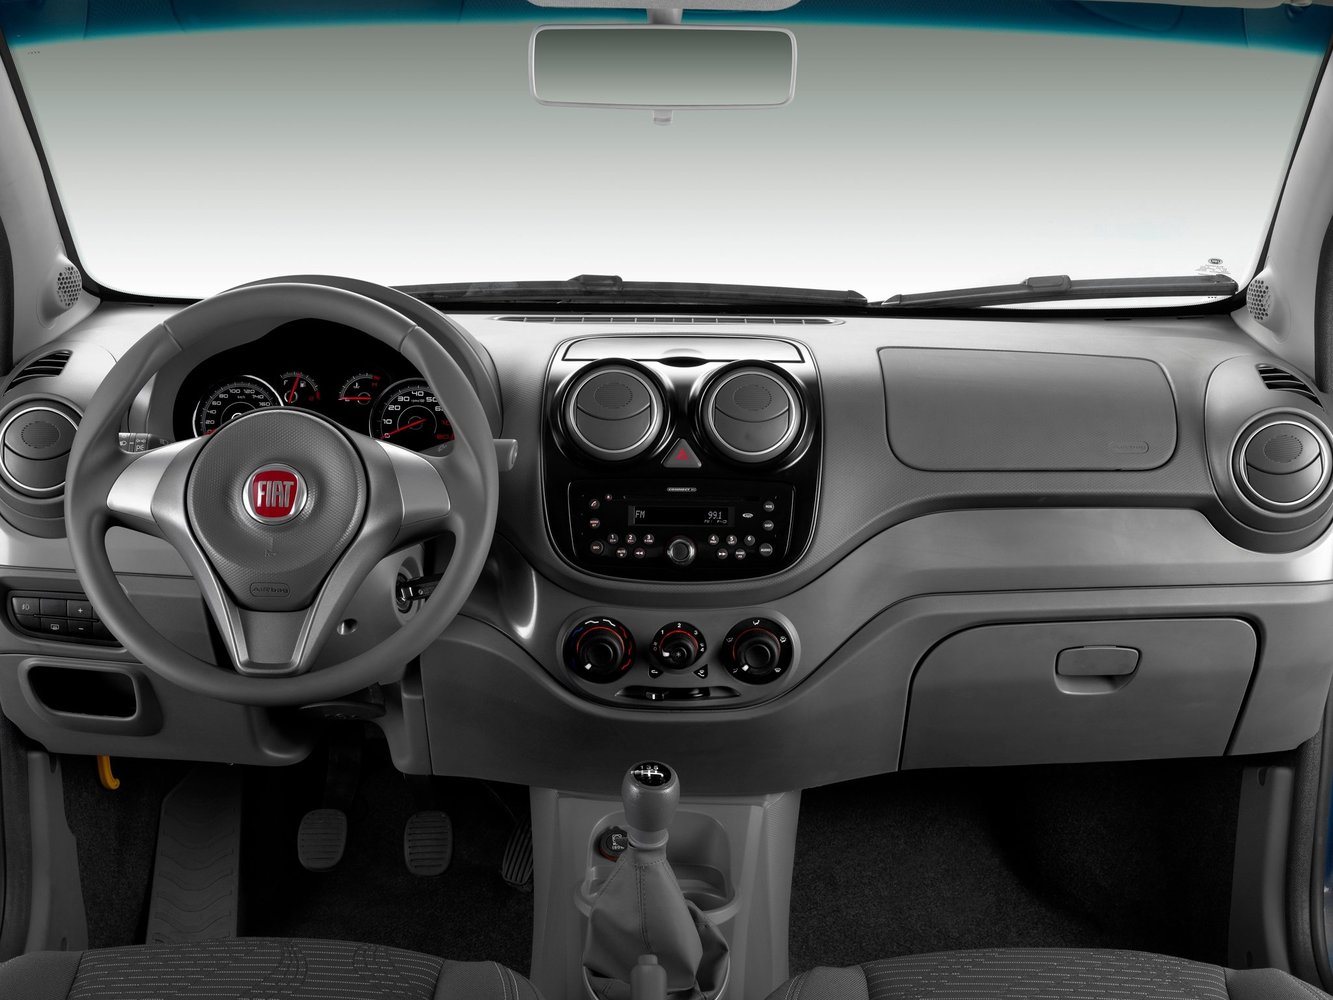 хэтчбек 5 дв. Fiat Palio 2008 - 2016г выпуска модификация 1.0 MT (73 л.с.)